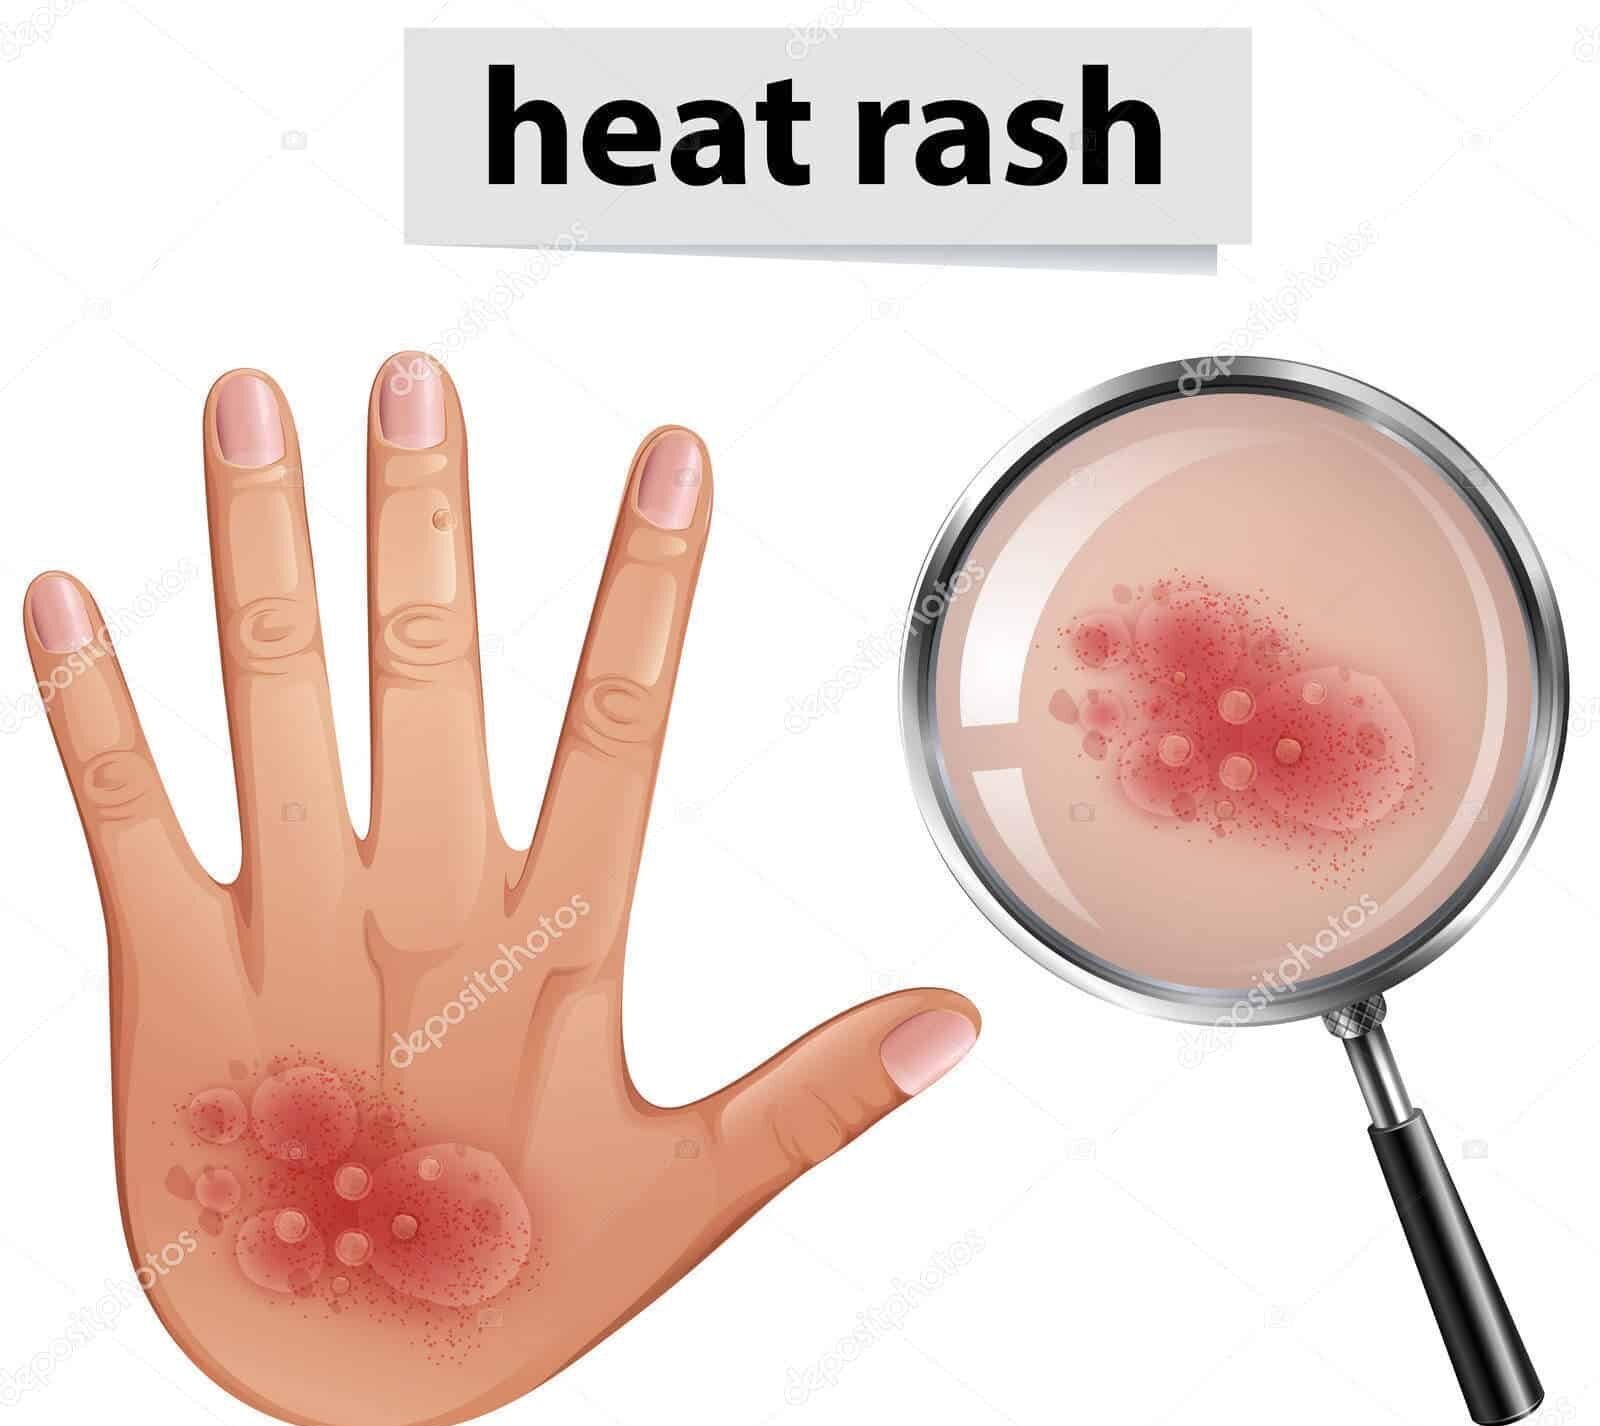 Heat Rash